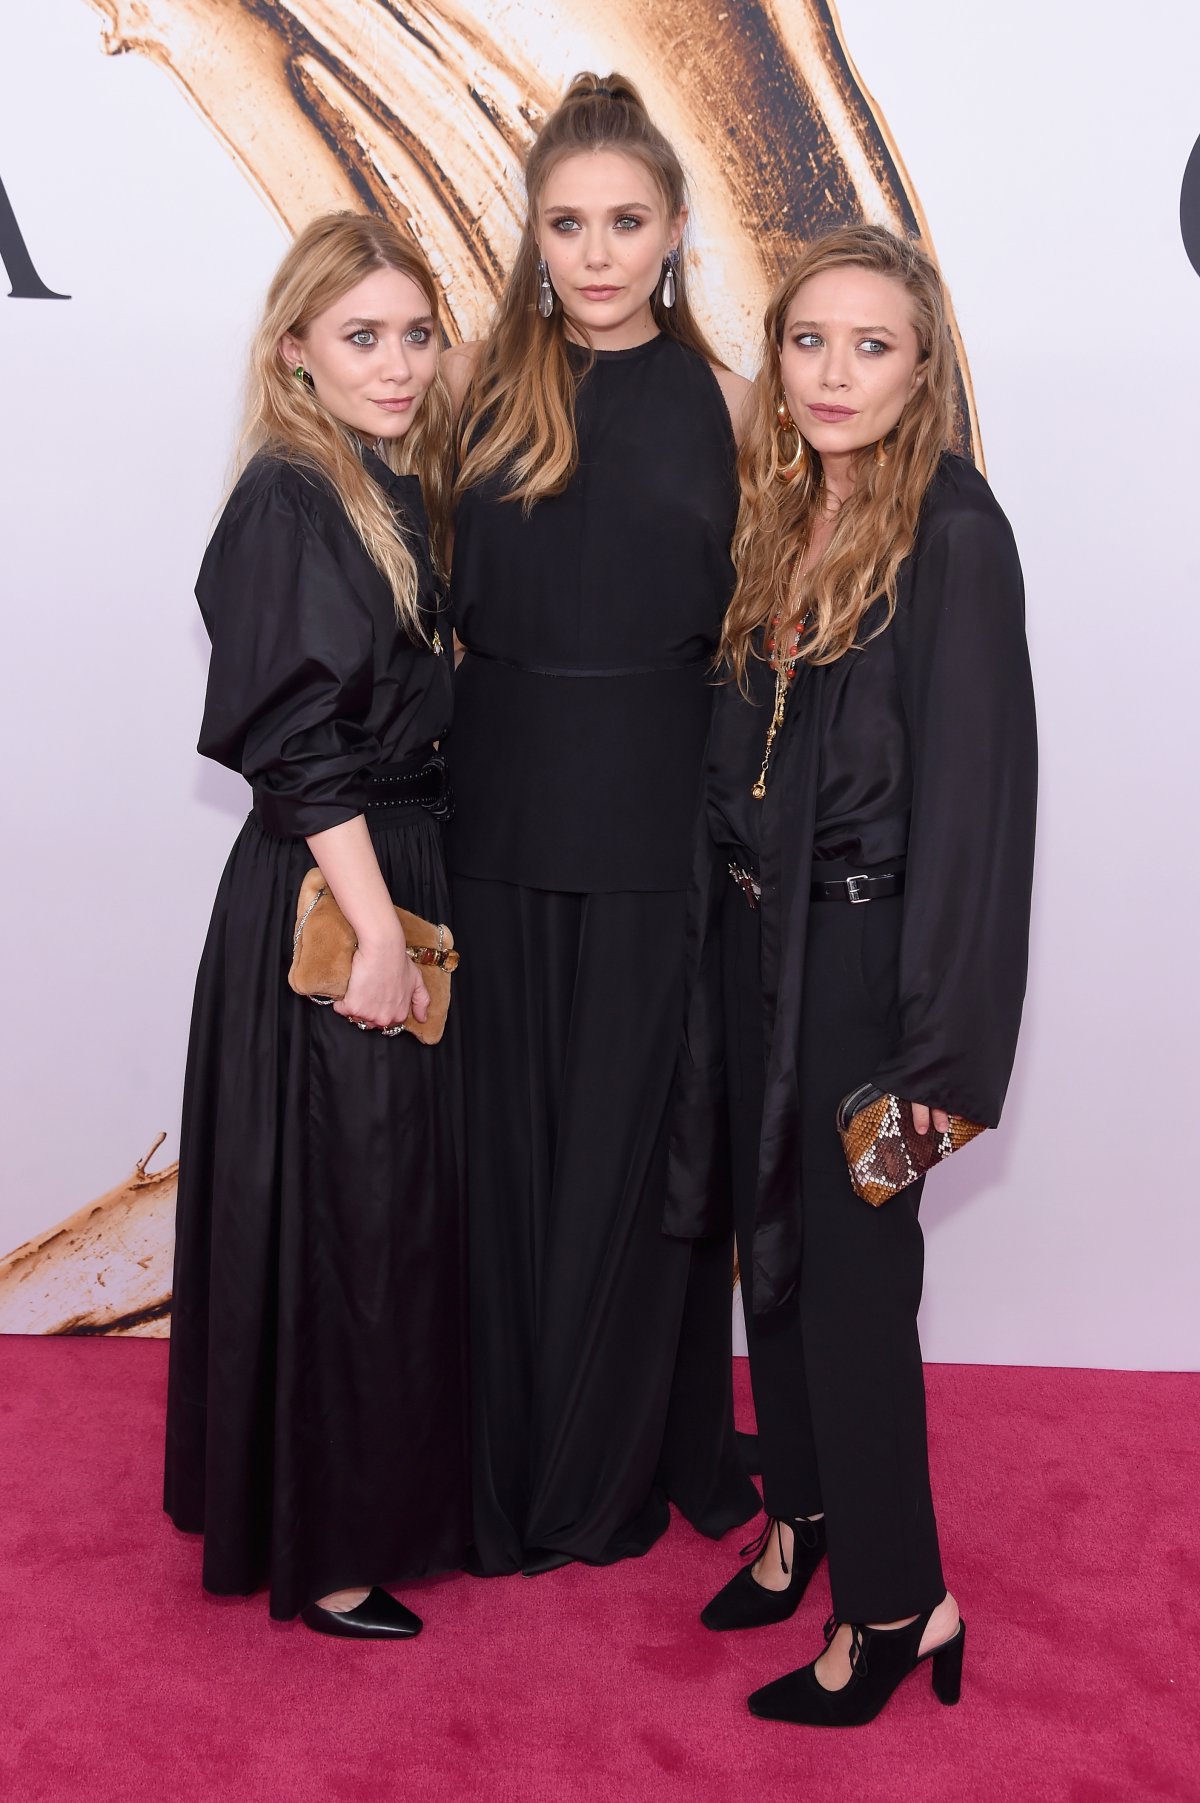 Mary Kate y Ashley Olsen: Treinta años siendo iconos de estilo